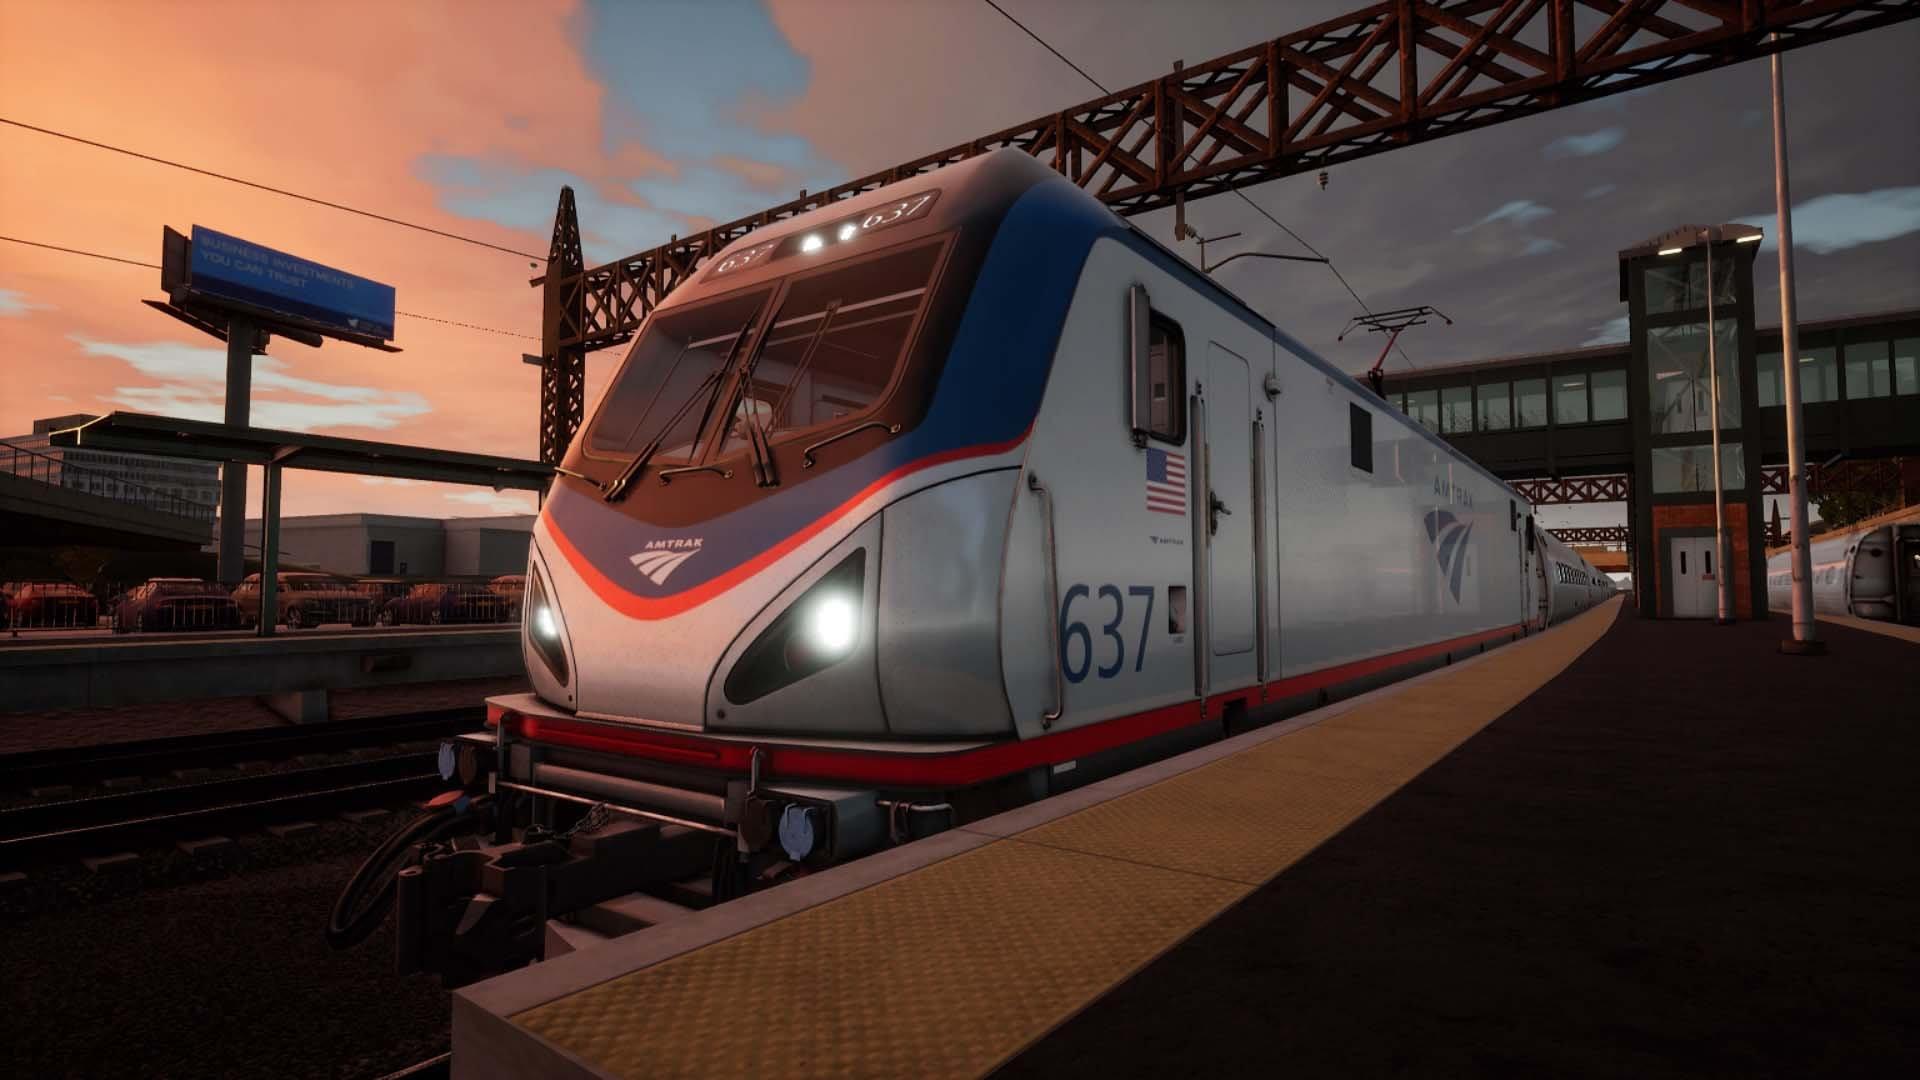 Jogo Train Sim World Xbox One em Promoção na Americanas